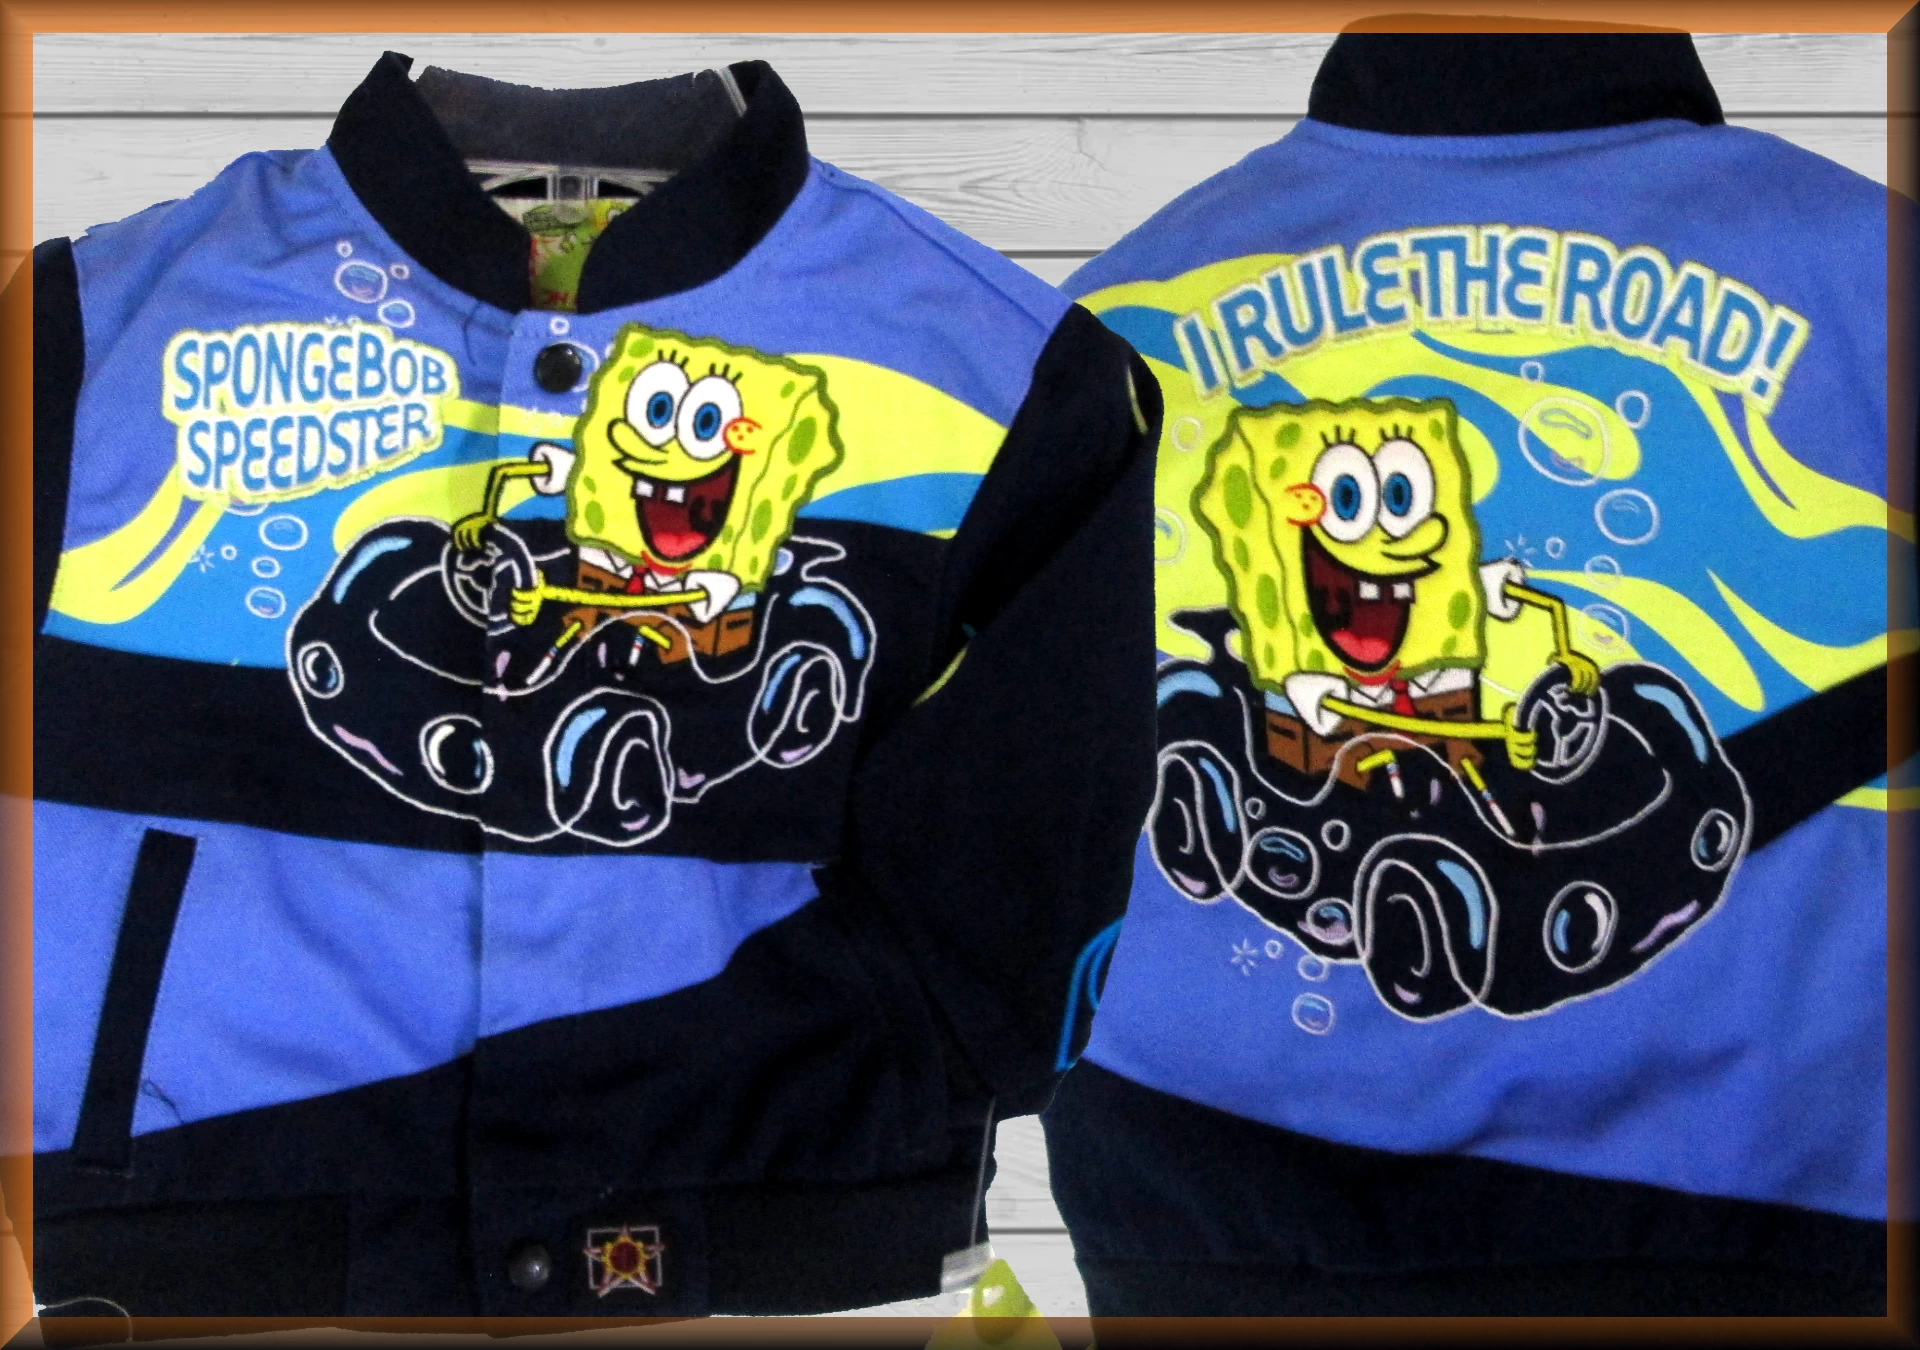 Spongebob Speedster Kids Cartoon Character Jacket by JH Design